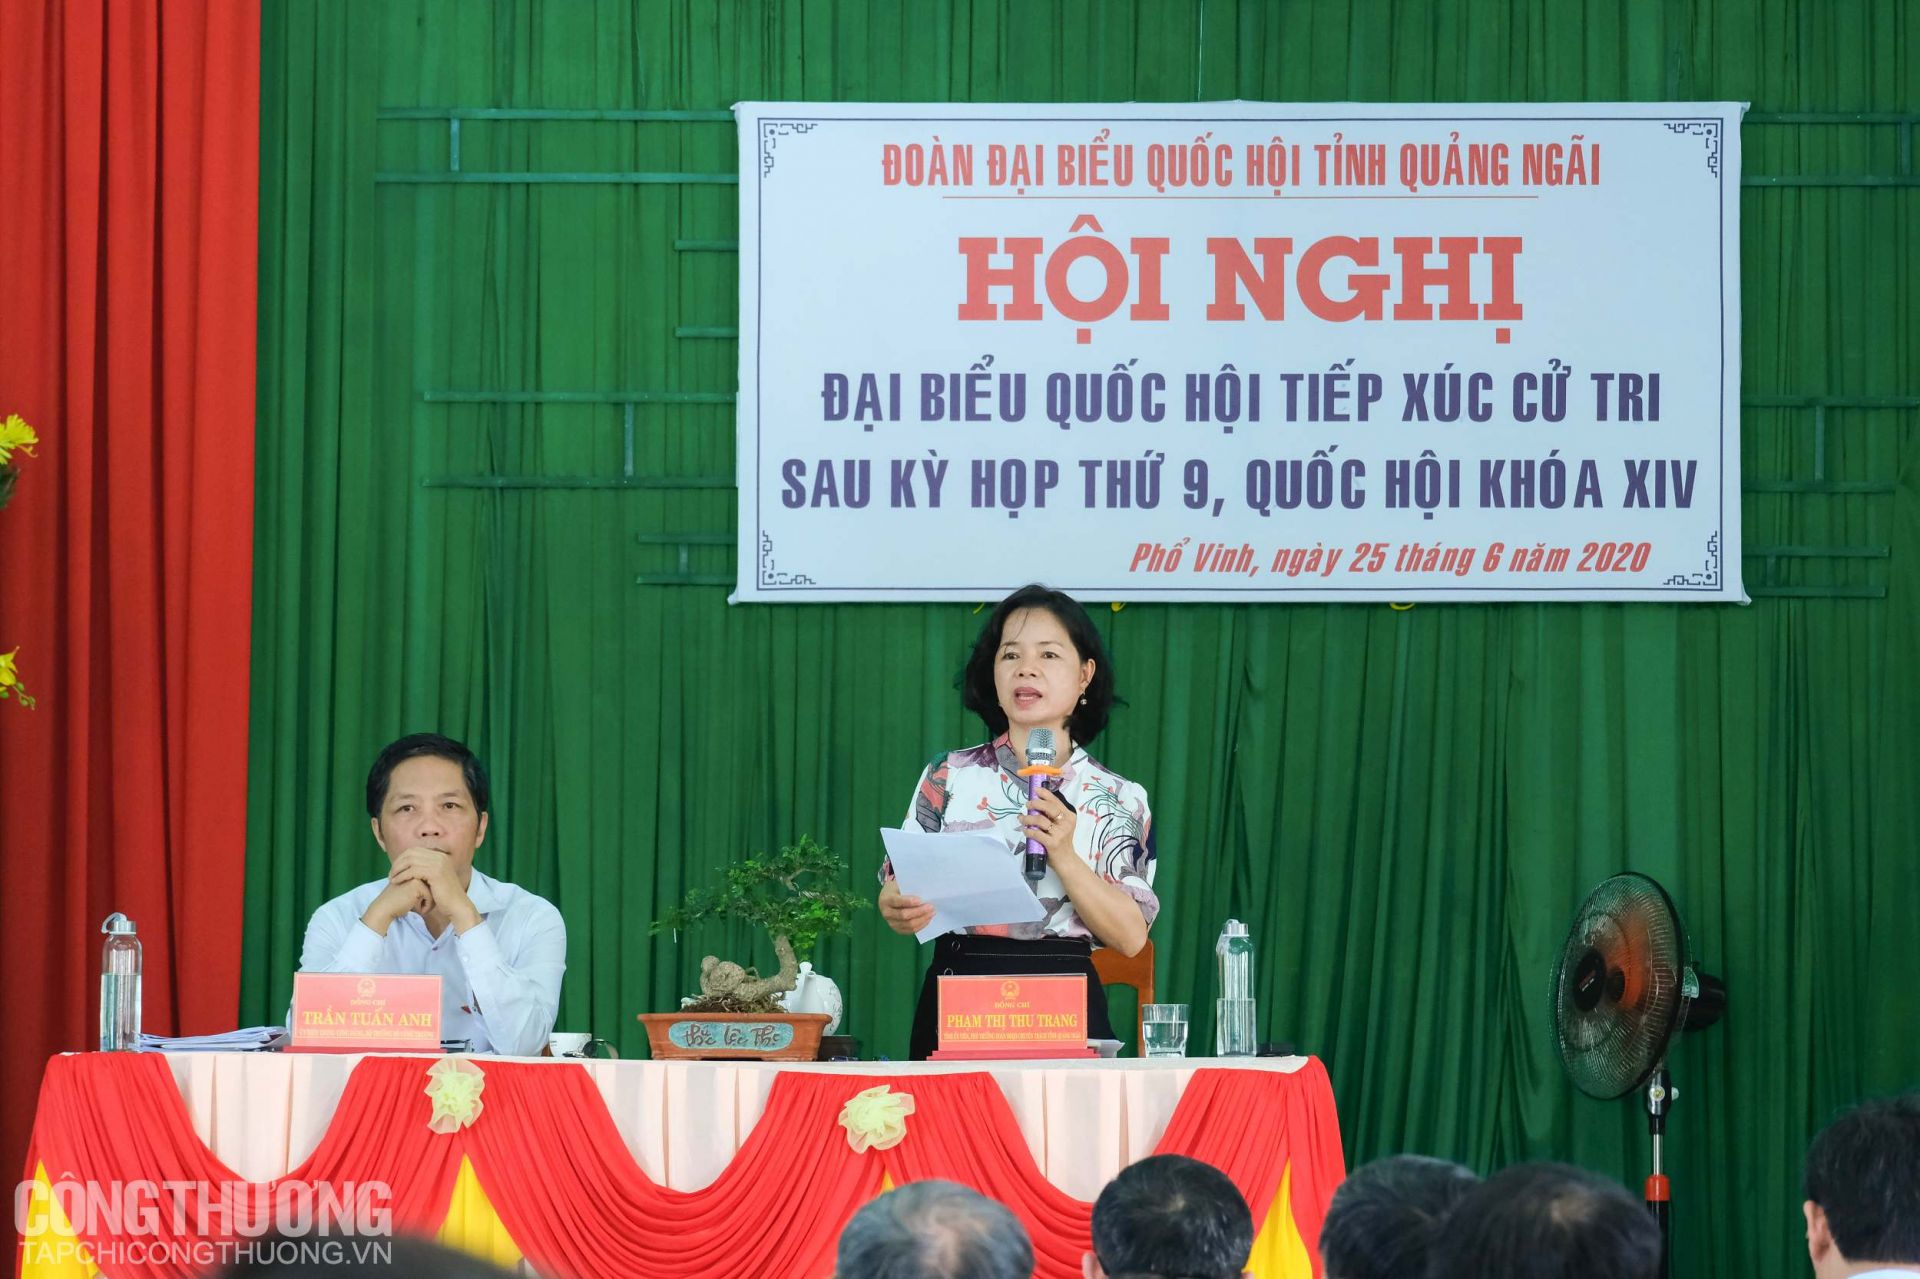 Tỉnh ủy viên, Phó Trưởng Đoàn chuyên trách Đoàn ĐBQH tỉnh Quảng Ngãi Phạm Thị Thu Trang trả lời một số thắc mắc của cử tri